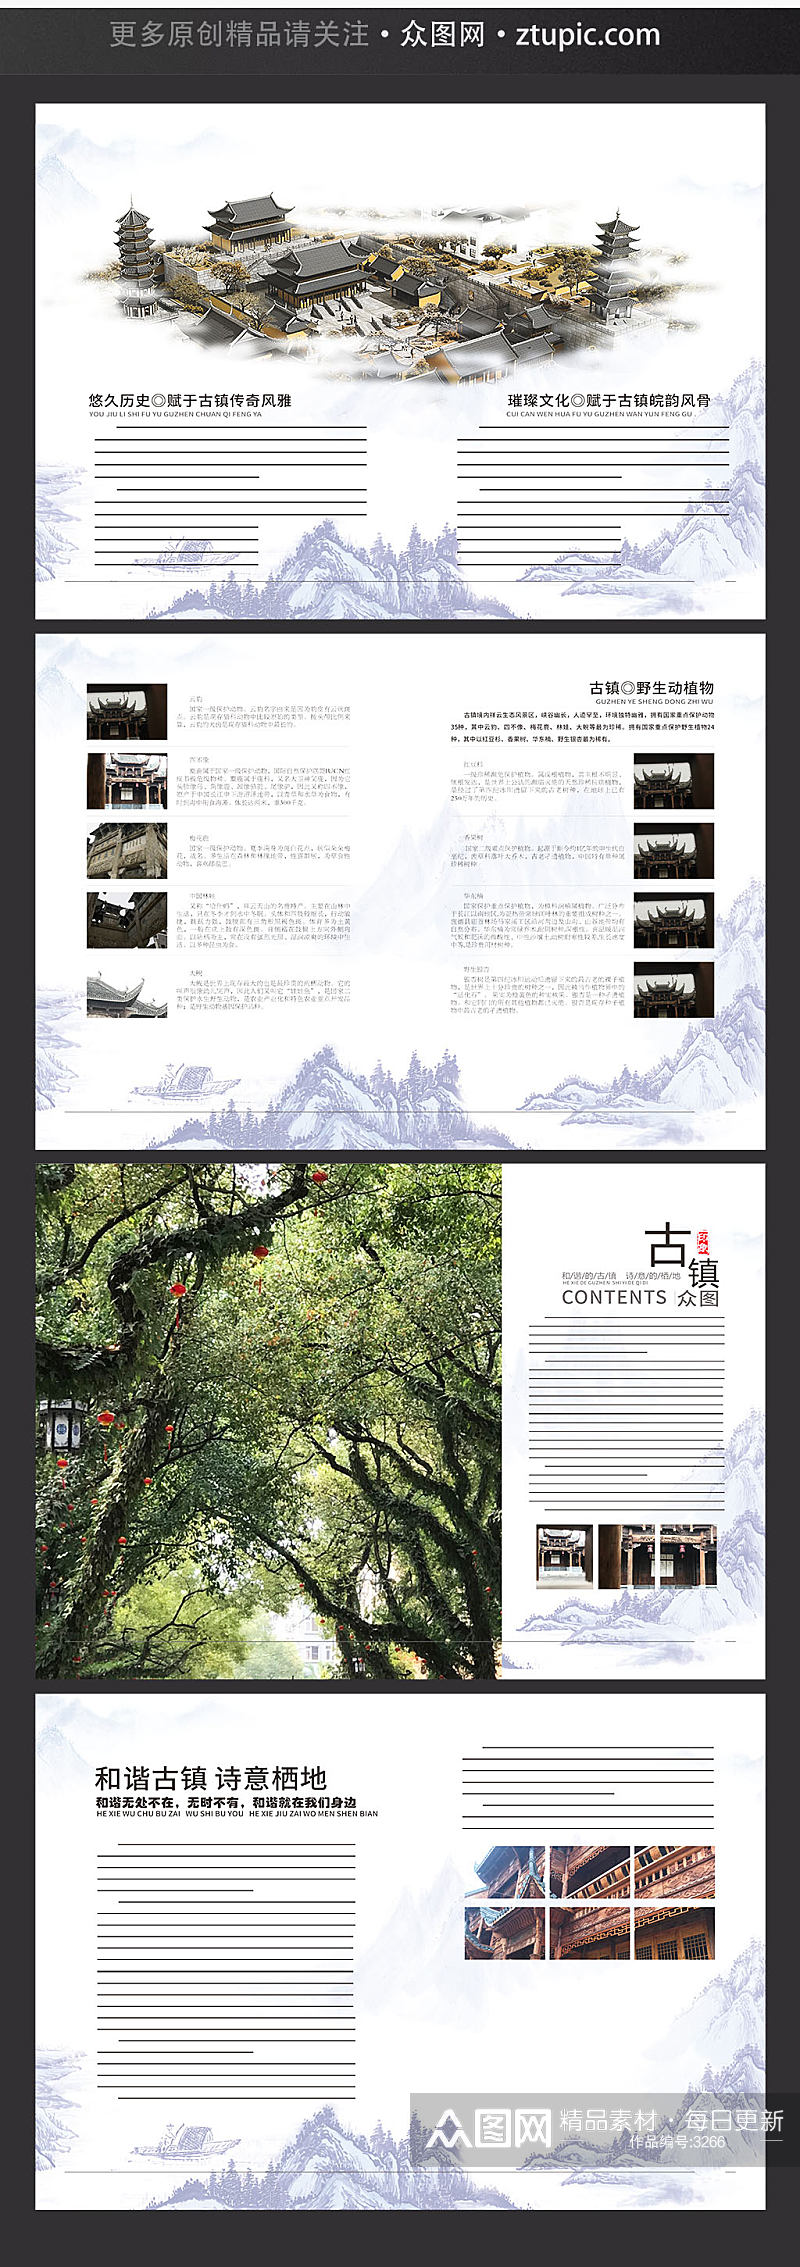 国风古镇旅游宣传画册经典封面设计素材